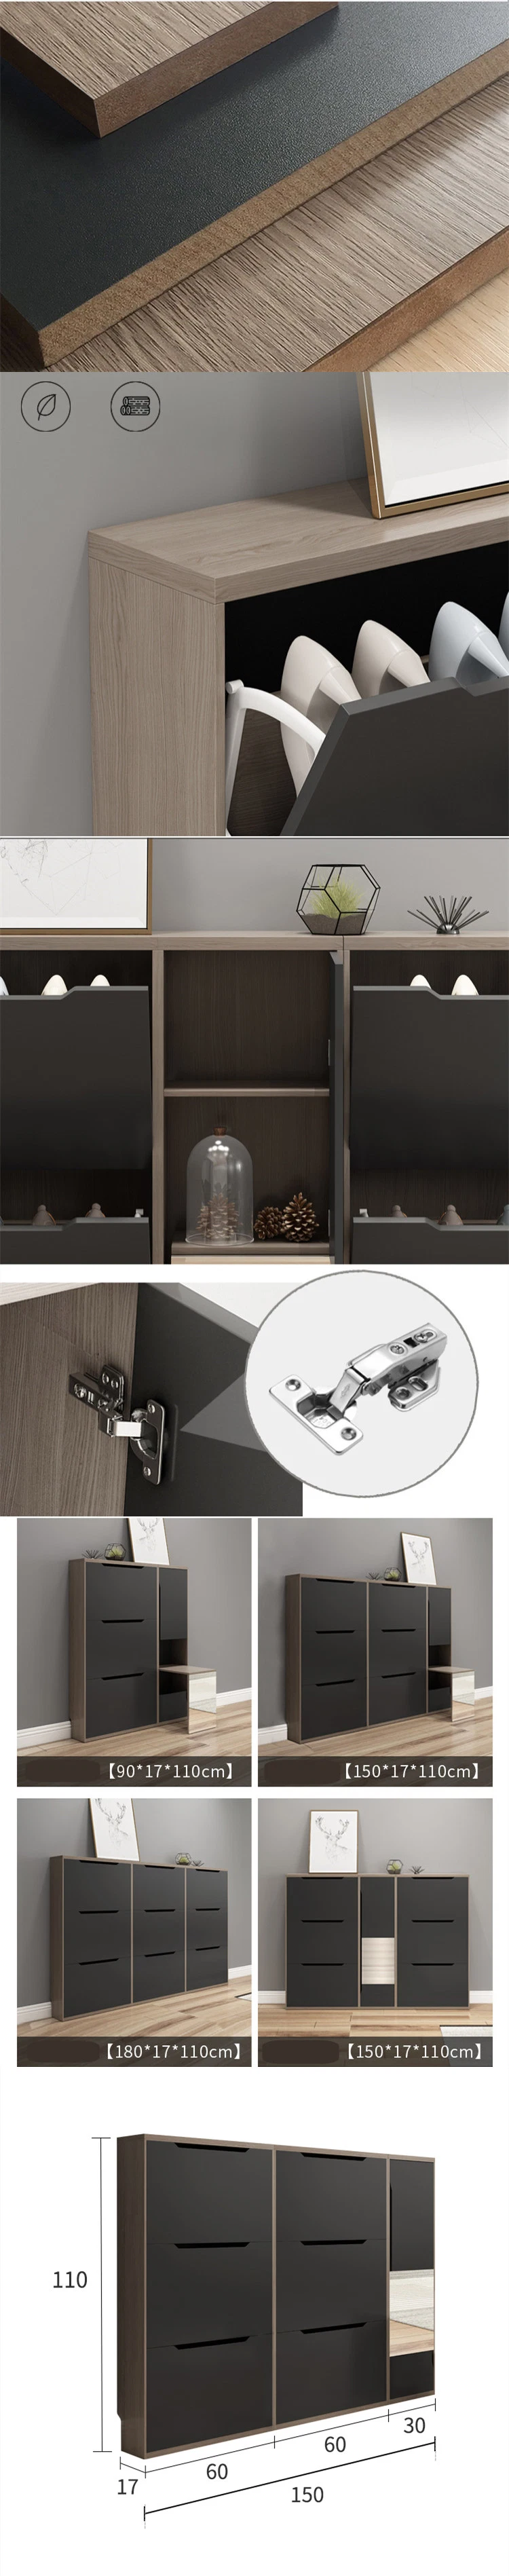 Quality Wholesale Modern Living Room Furniture Storage MFC Melamine Shoe Rack Cabinet